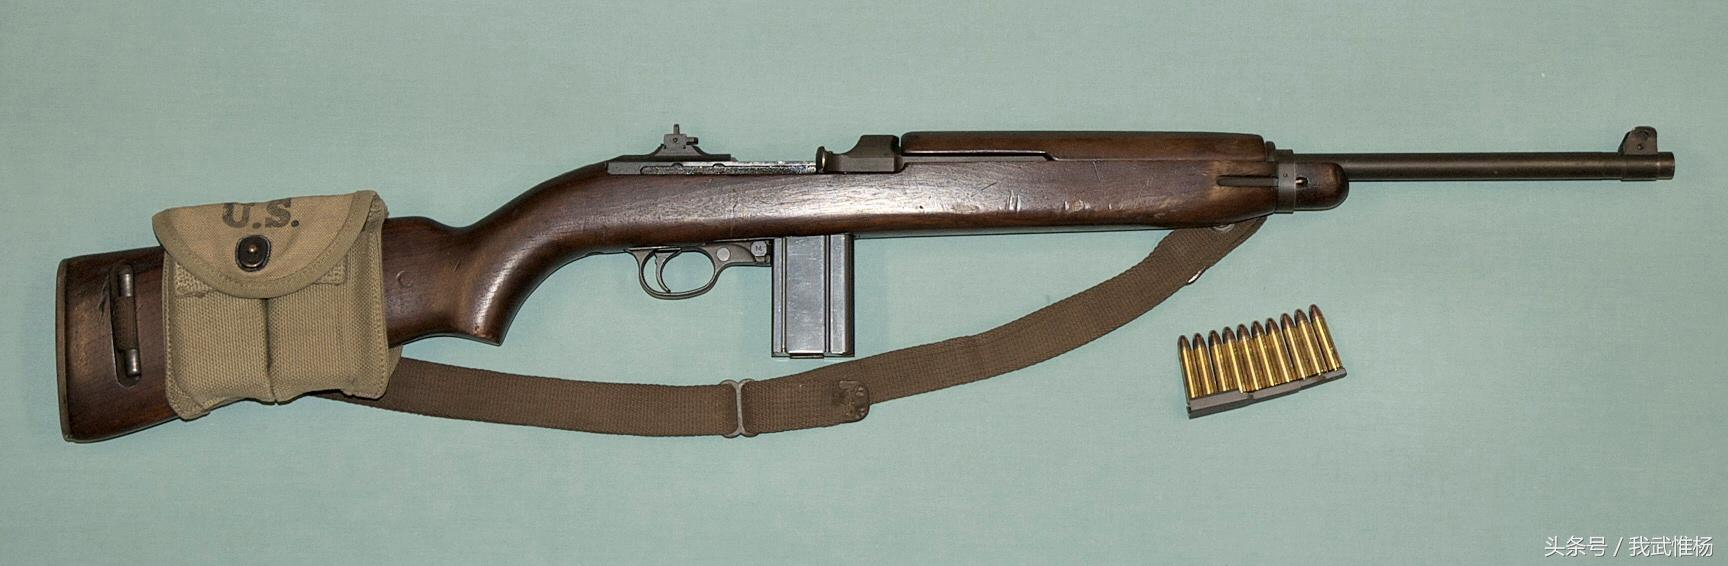 二战中美国使用最广泛的武器之一 m1卡宾枪